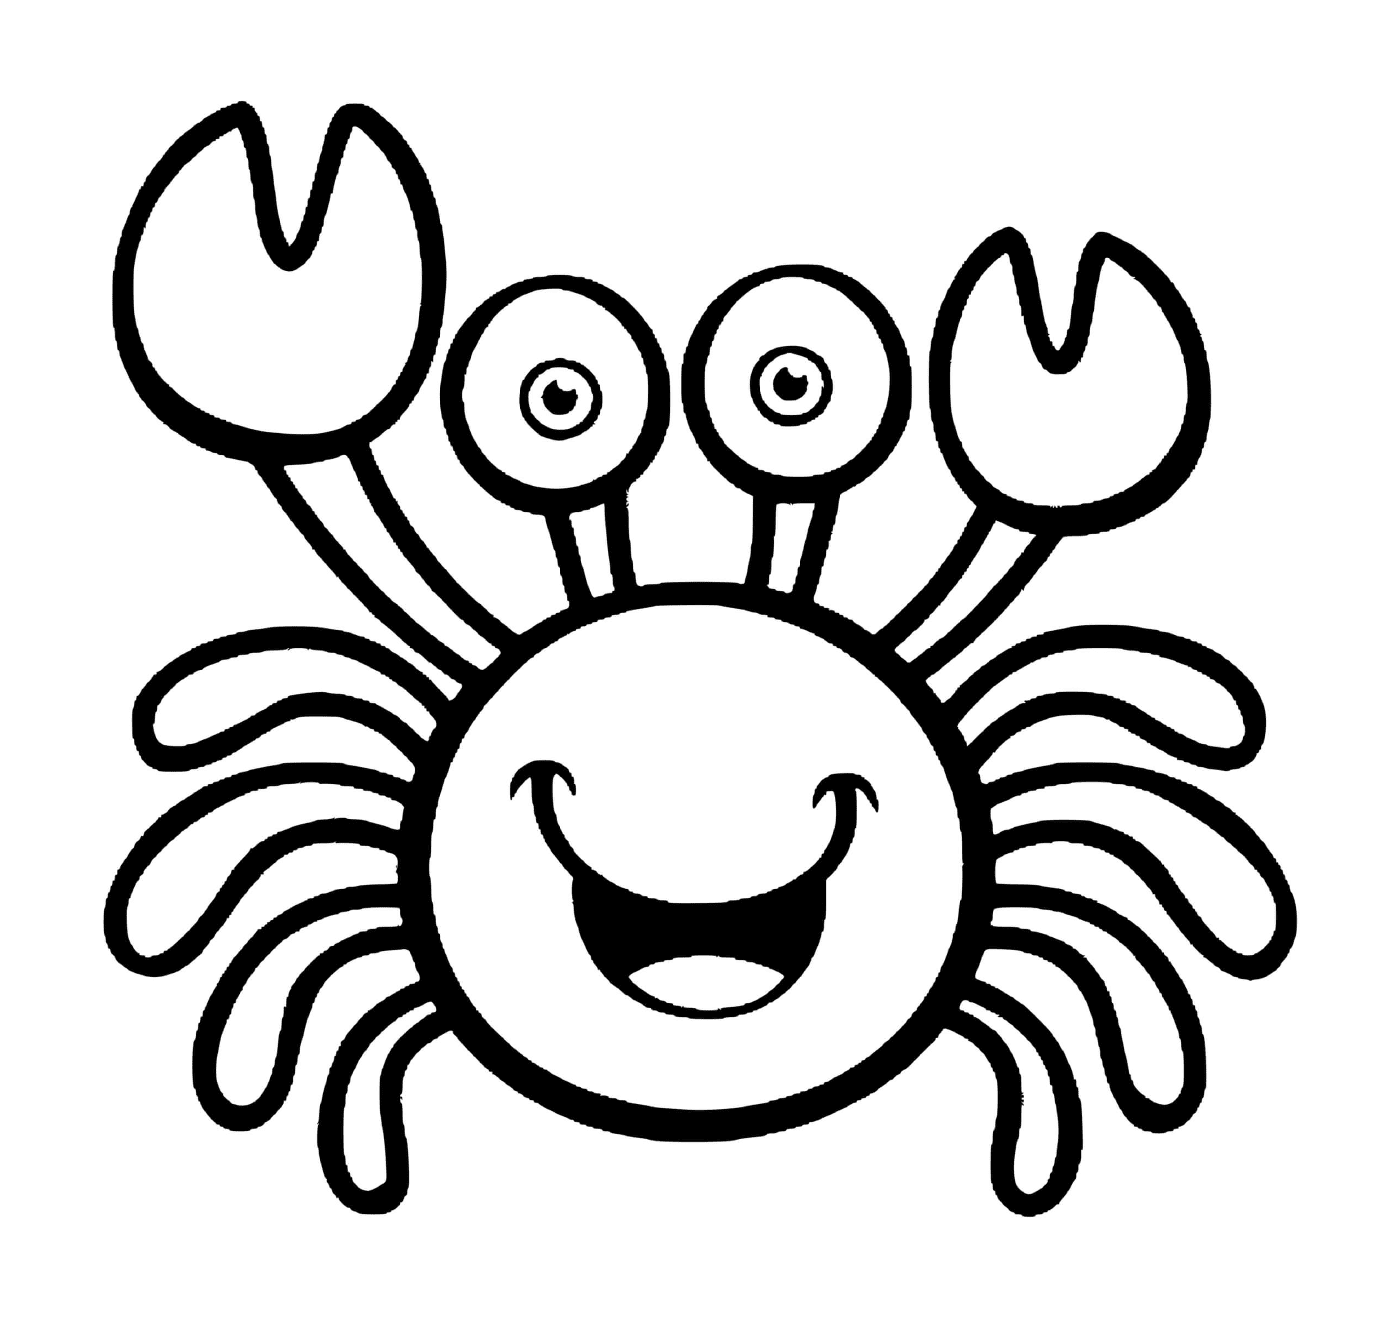   Un crabe heureux en PS 